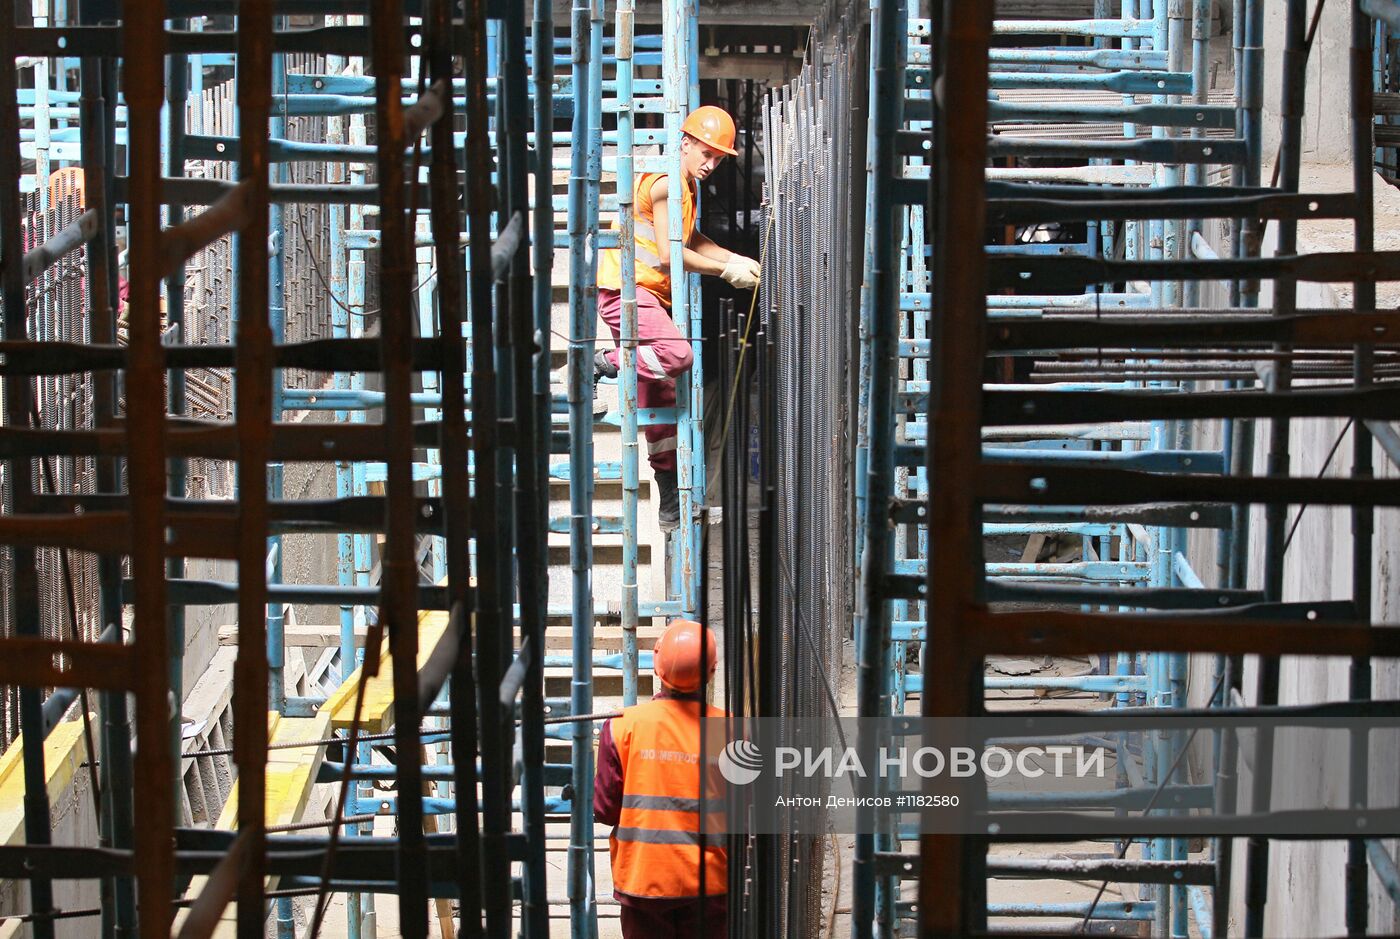 Строительство станции метро "Пятницкое шоссе" в Москве